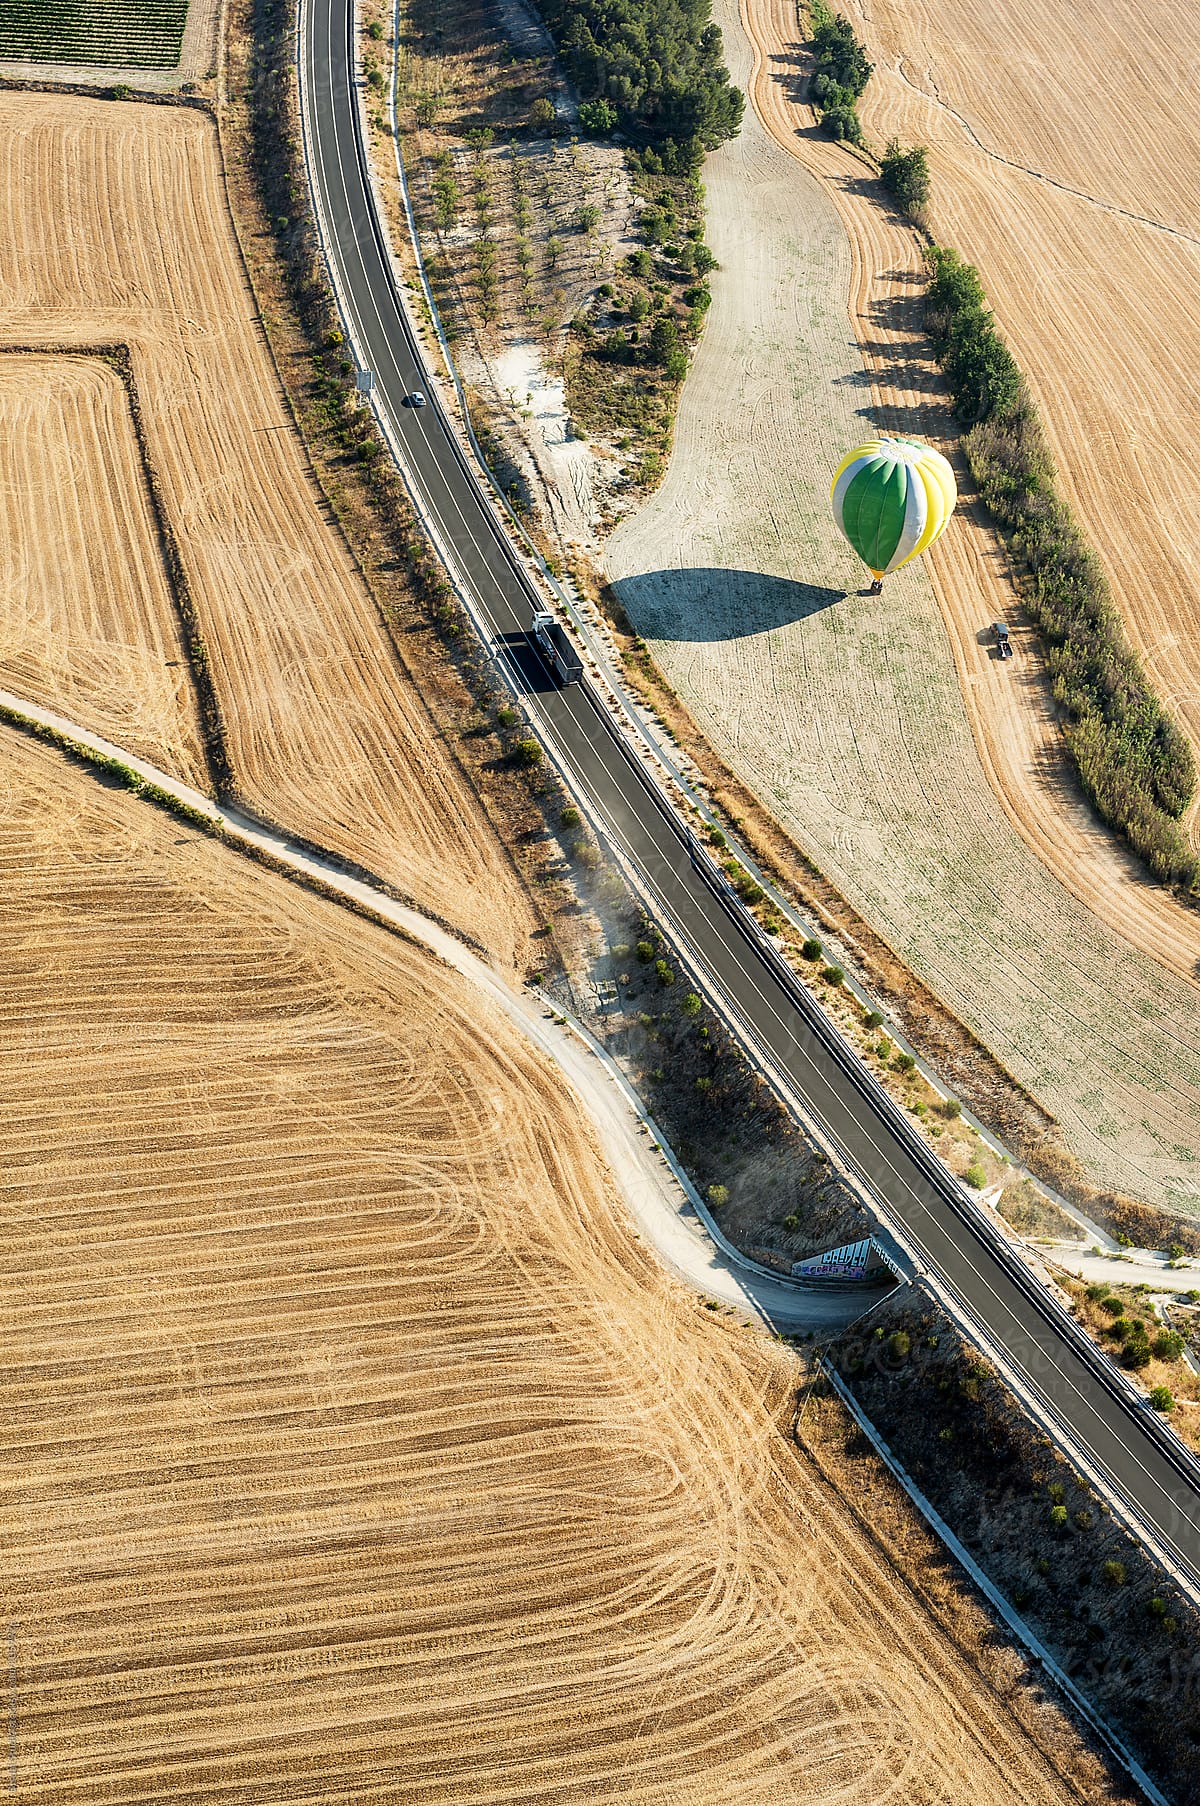 Hot air balloon landing on a wheat field,Igualada, Spain